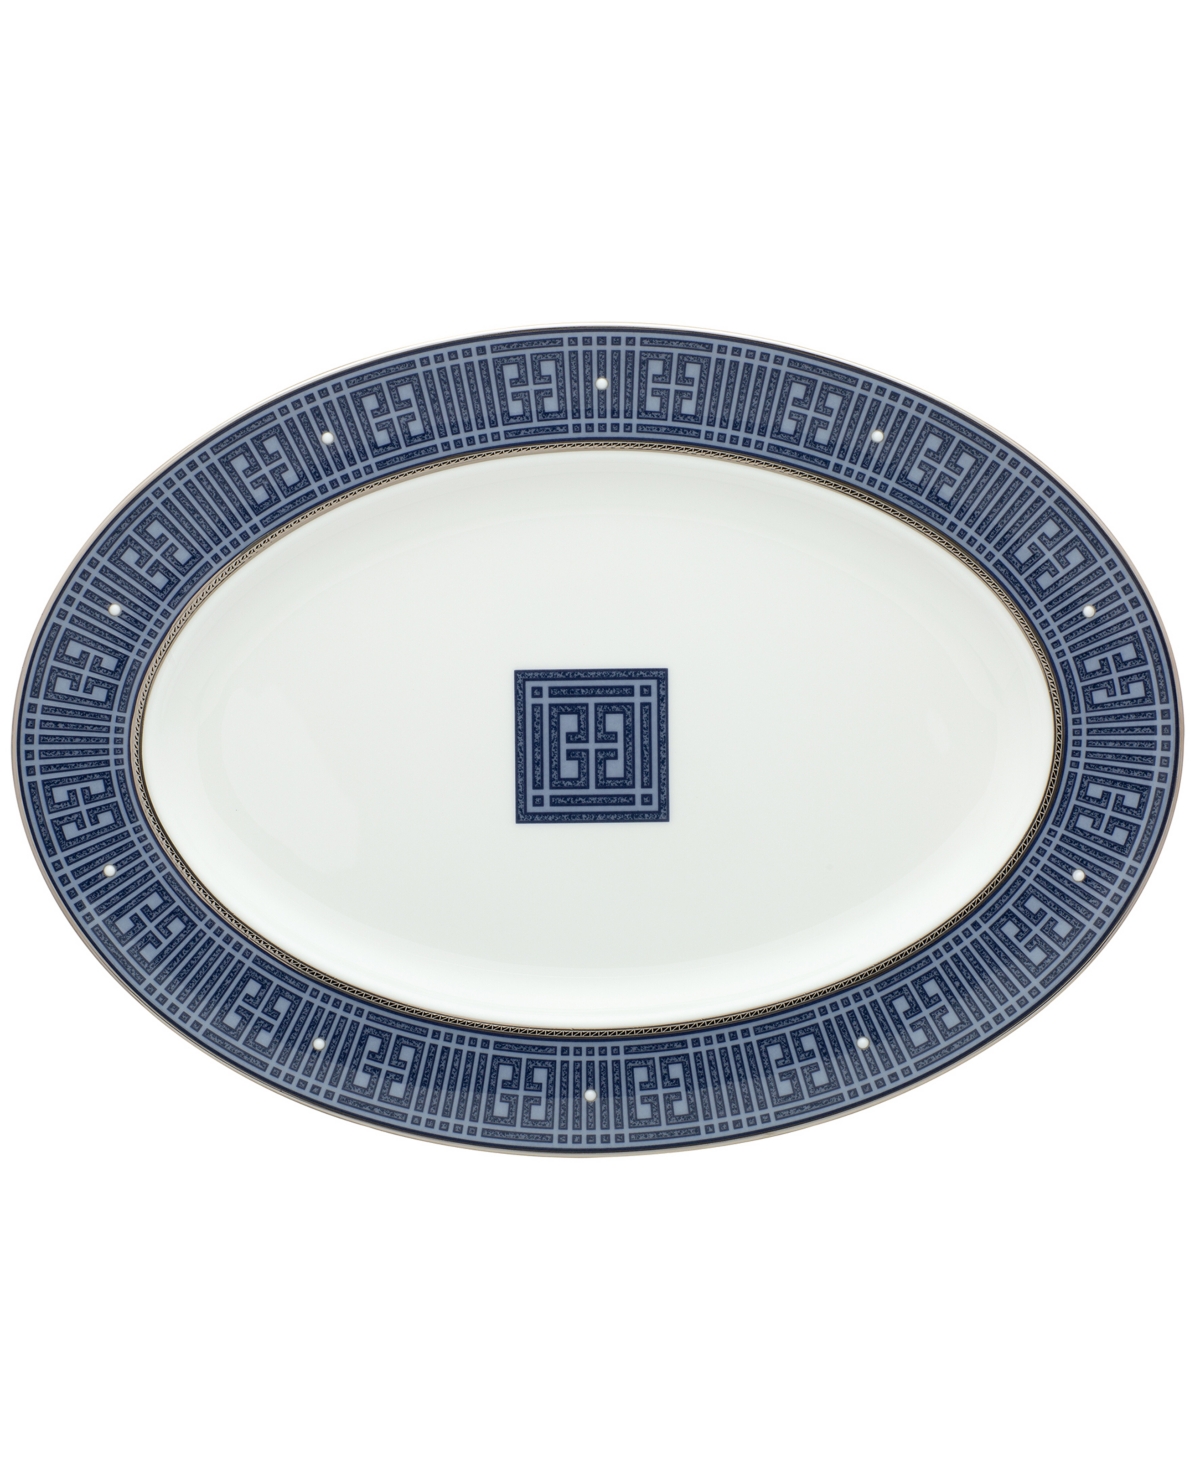 Noritake Infinity Oval Platter, 14" In Blue